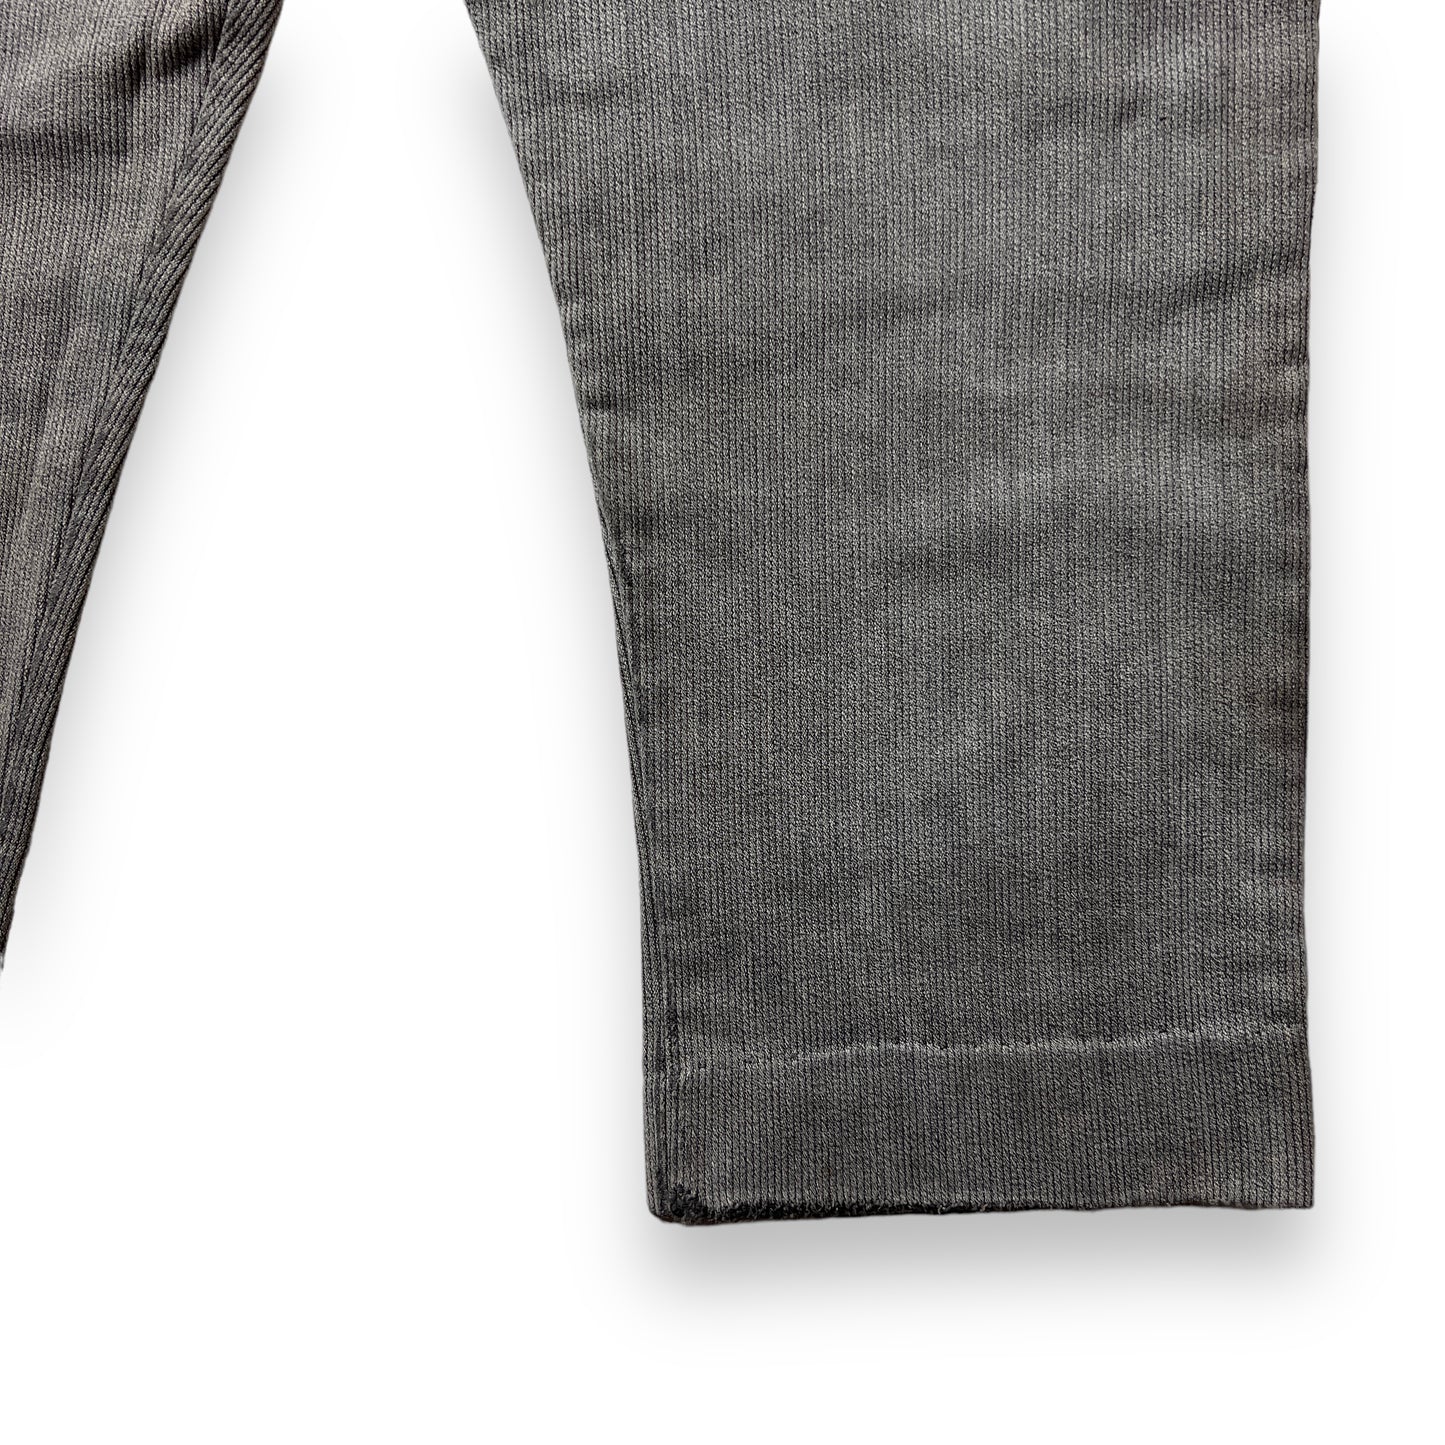 50's French Vintage Cotton Pique Pants Black